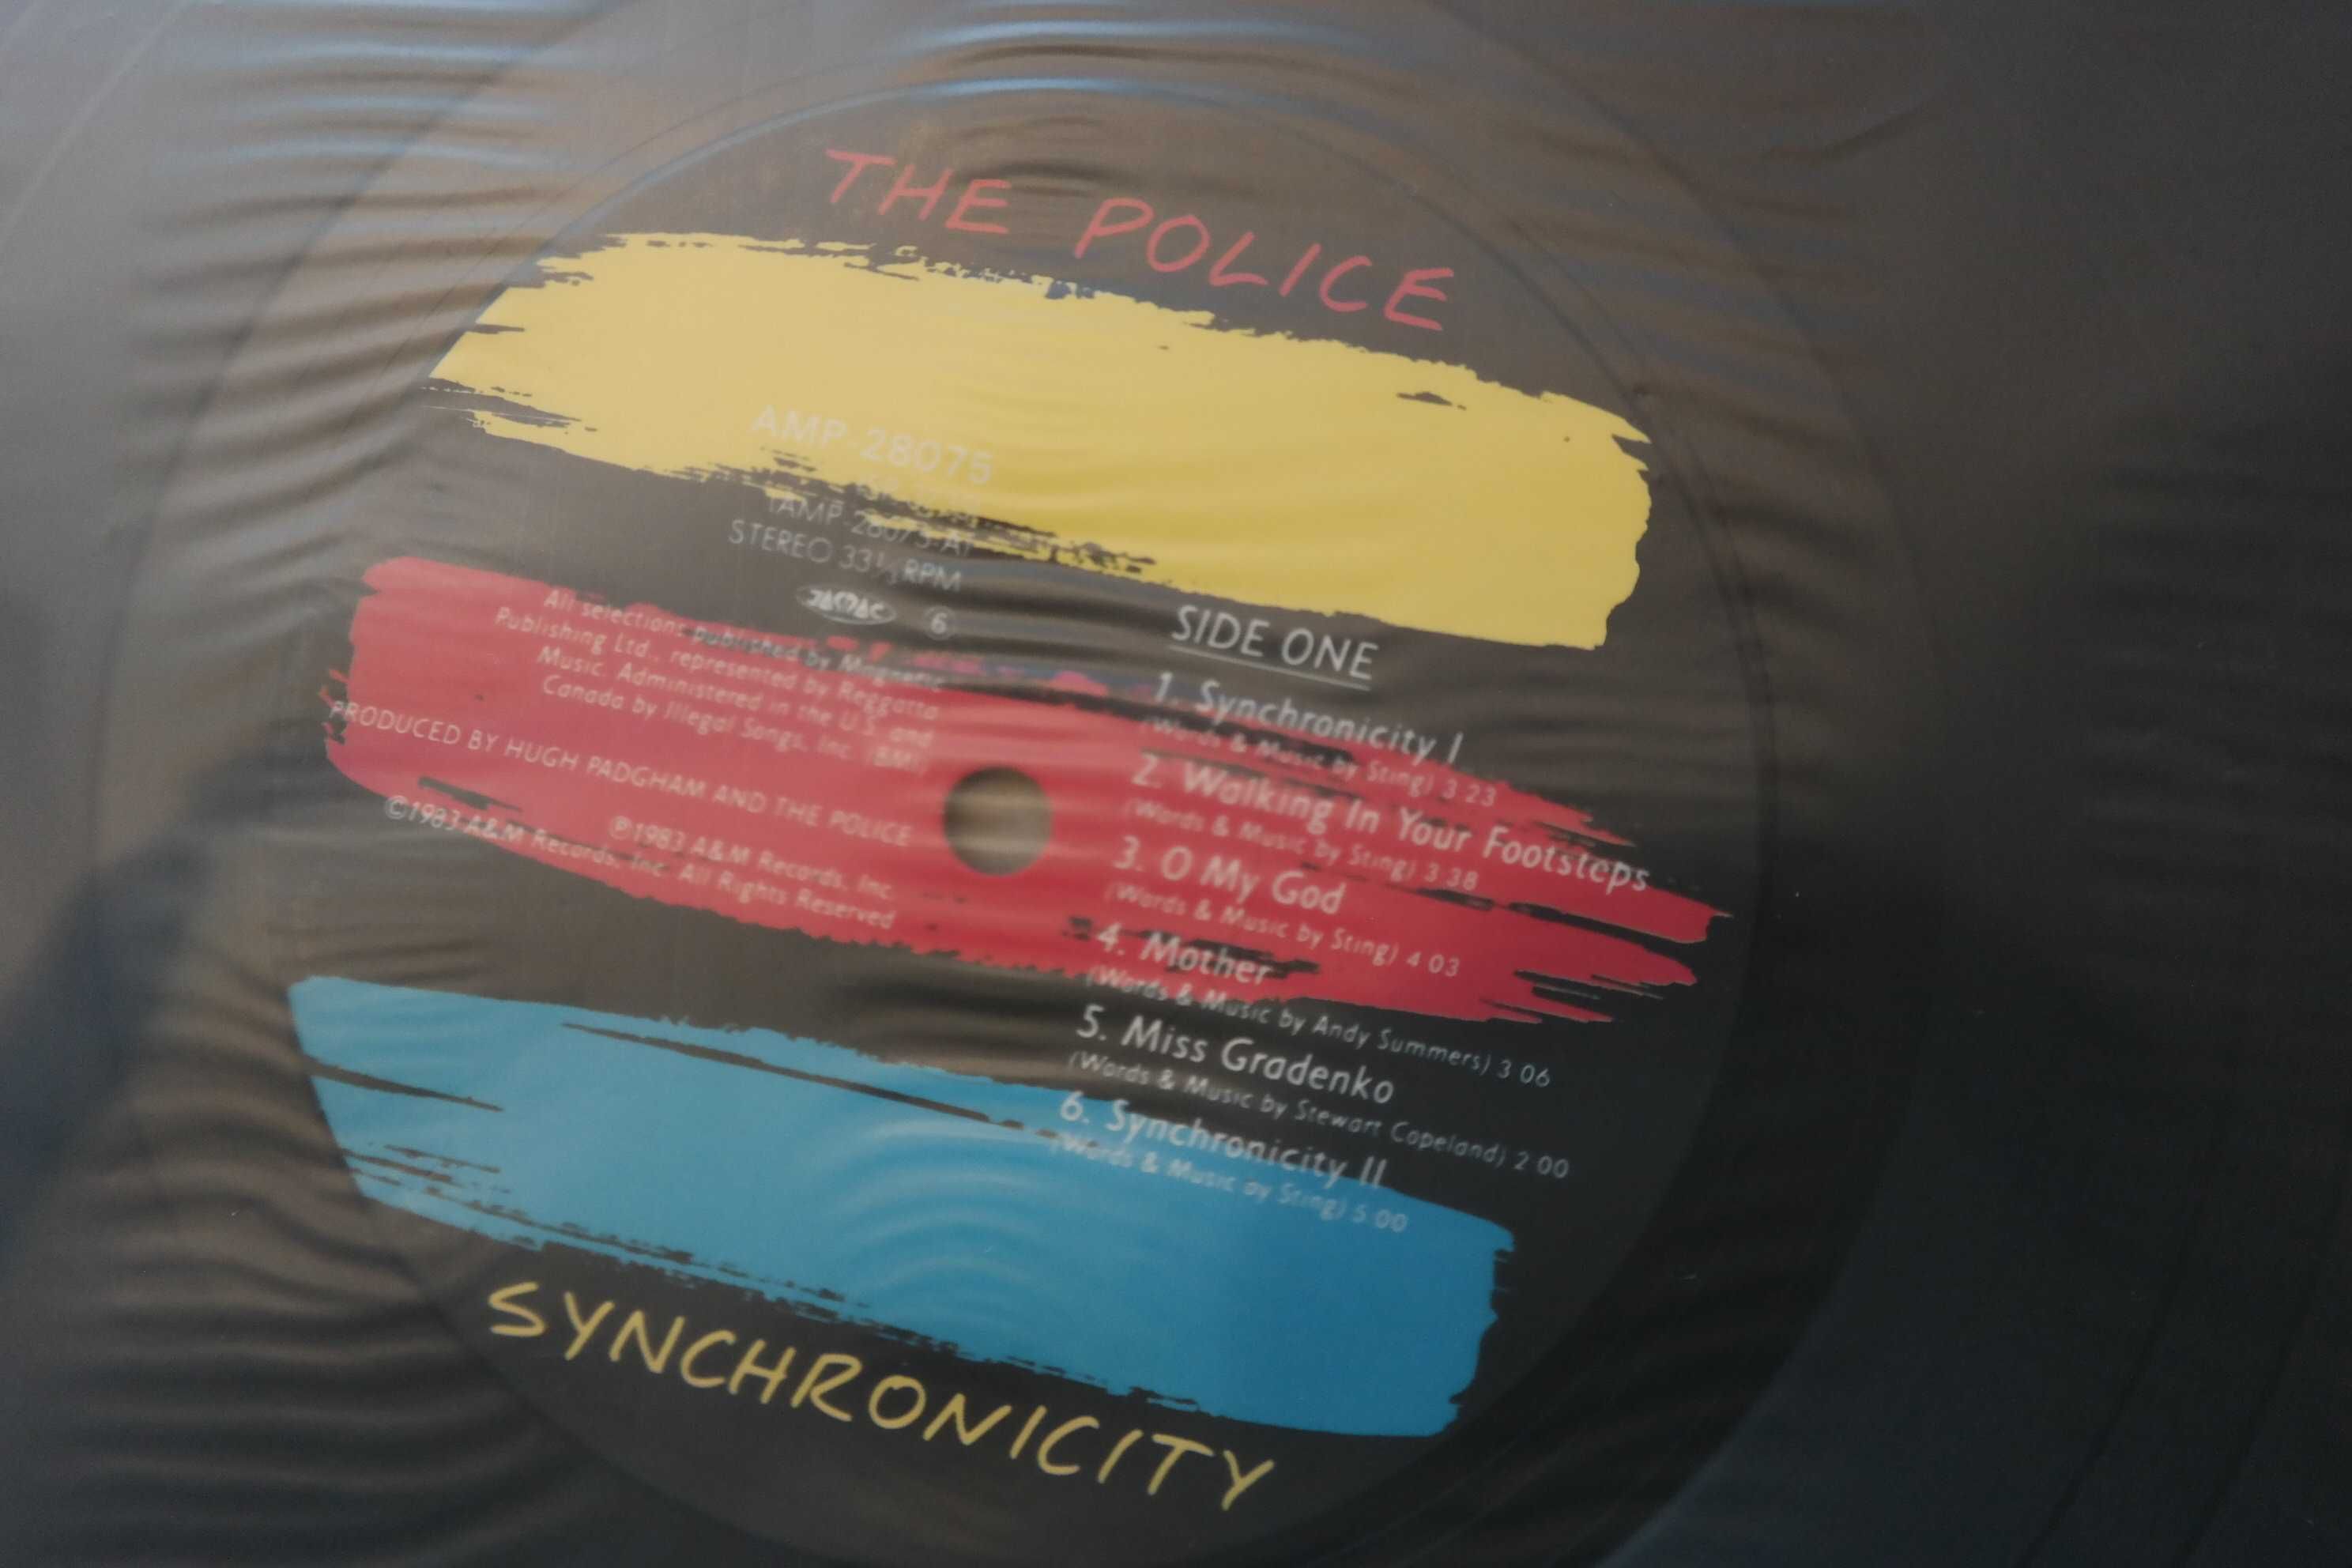 Płyta winylowa POLICE SYNCHRONICITY LP JAPAN 1983 wyprzedaż